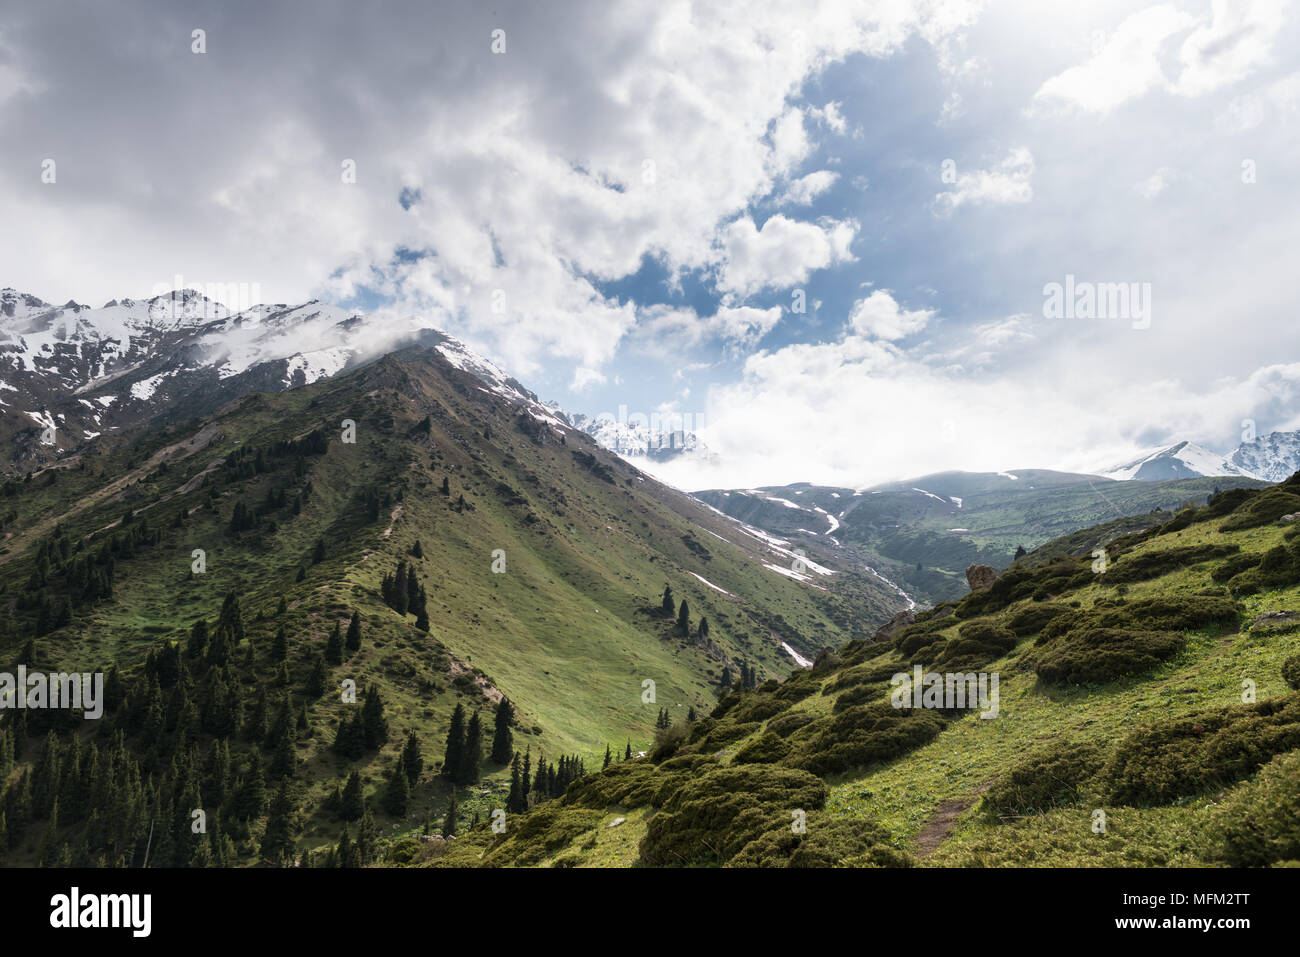 Vue panoramique sur les montagnes majestueuses et de cimes enneigées. Beau ciel nuageux spectaculaires. Région du sud du Kazakhstan. Banque D'Images